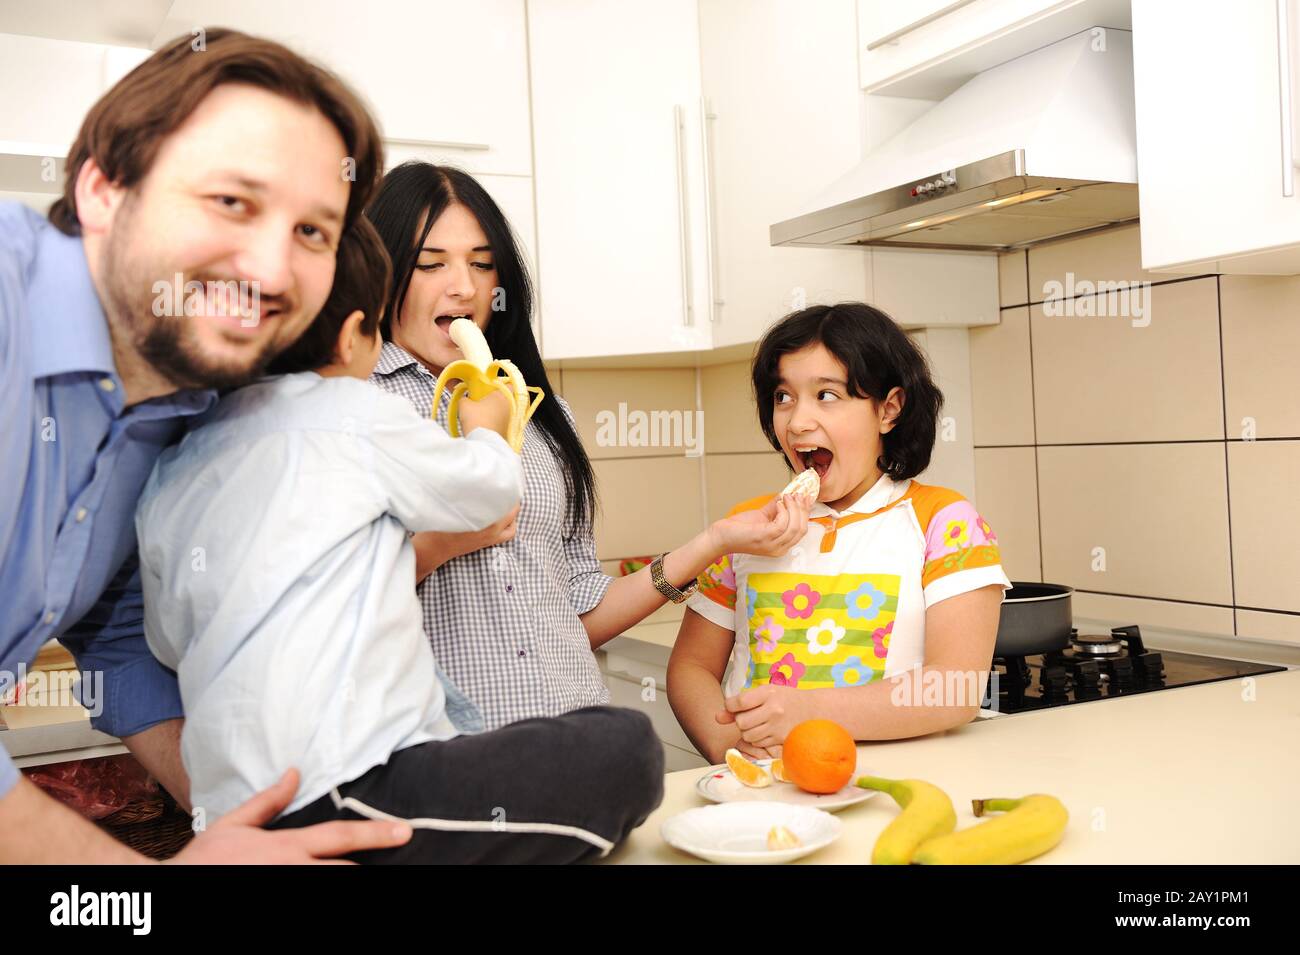 Famille heureuse de quatre membres dans la cuisine Banque D'Images